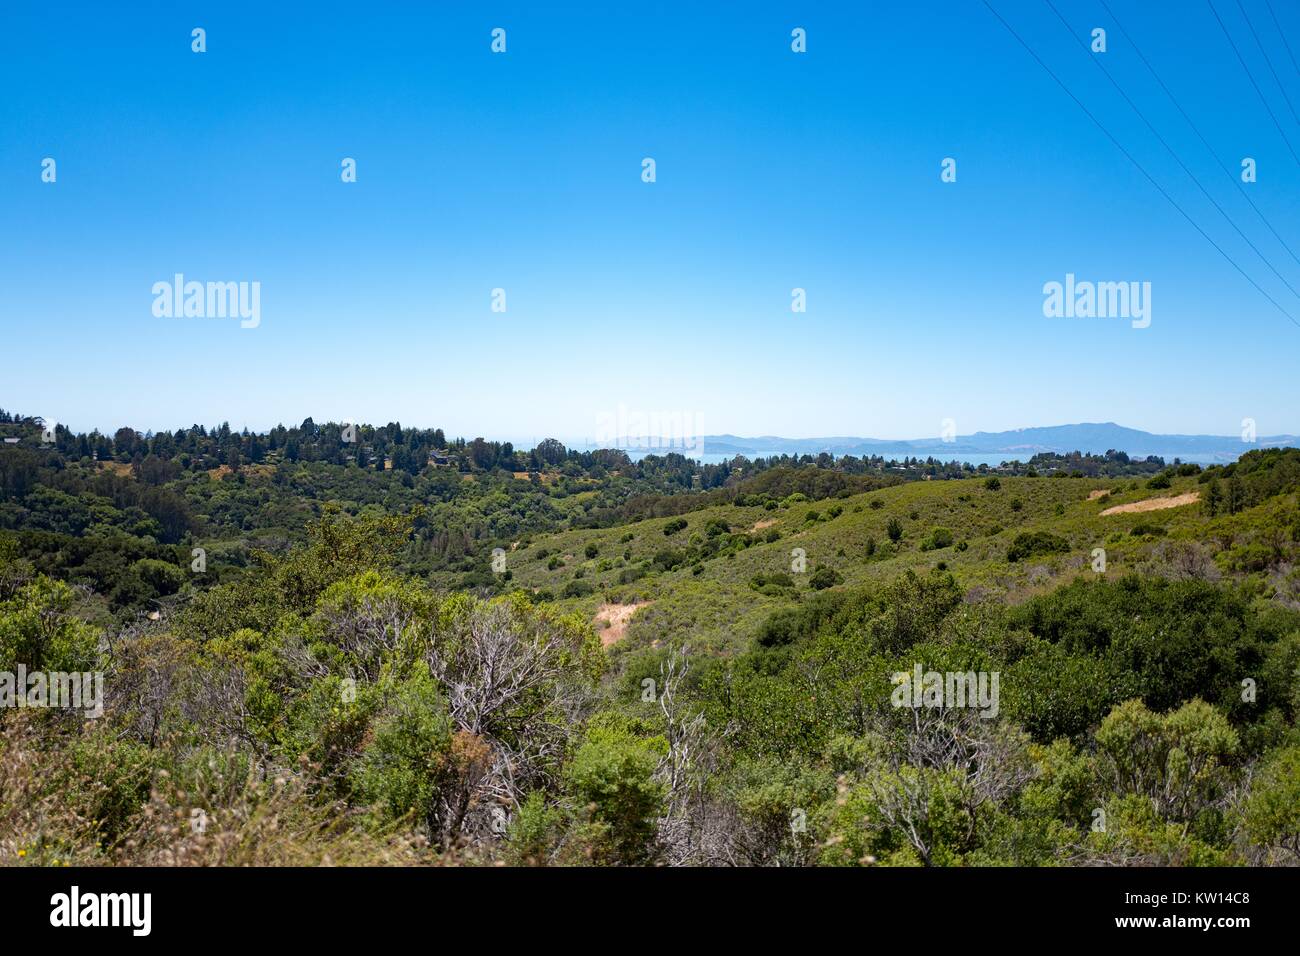 Berkeley hills, viewed from Nimitz Way in Tilden Regional Park, Berkeley, California, July, 2016. Stock Photo